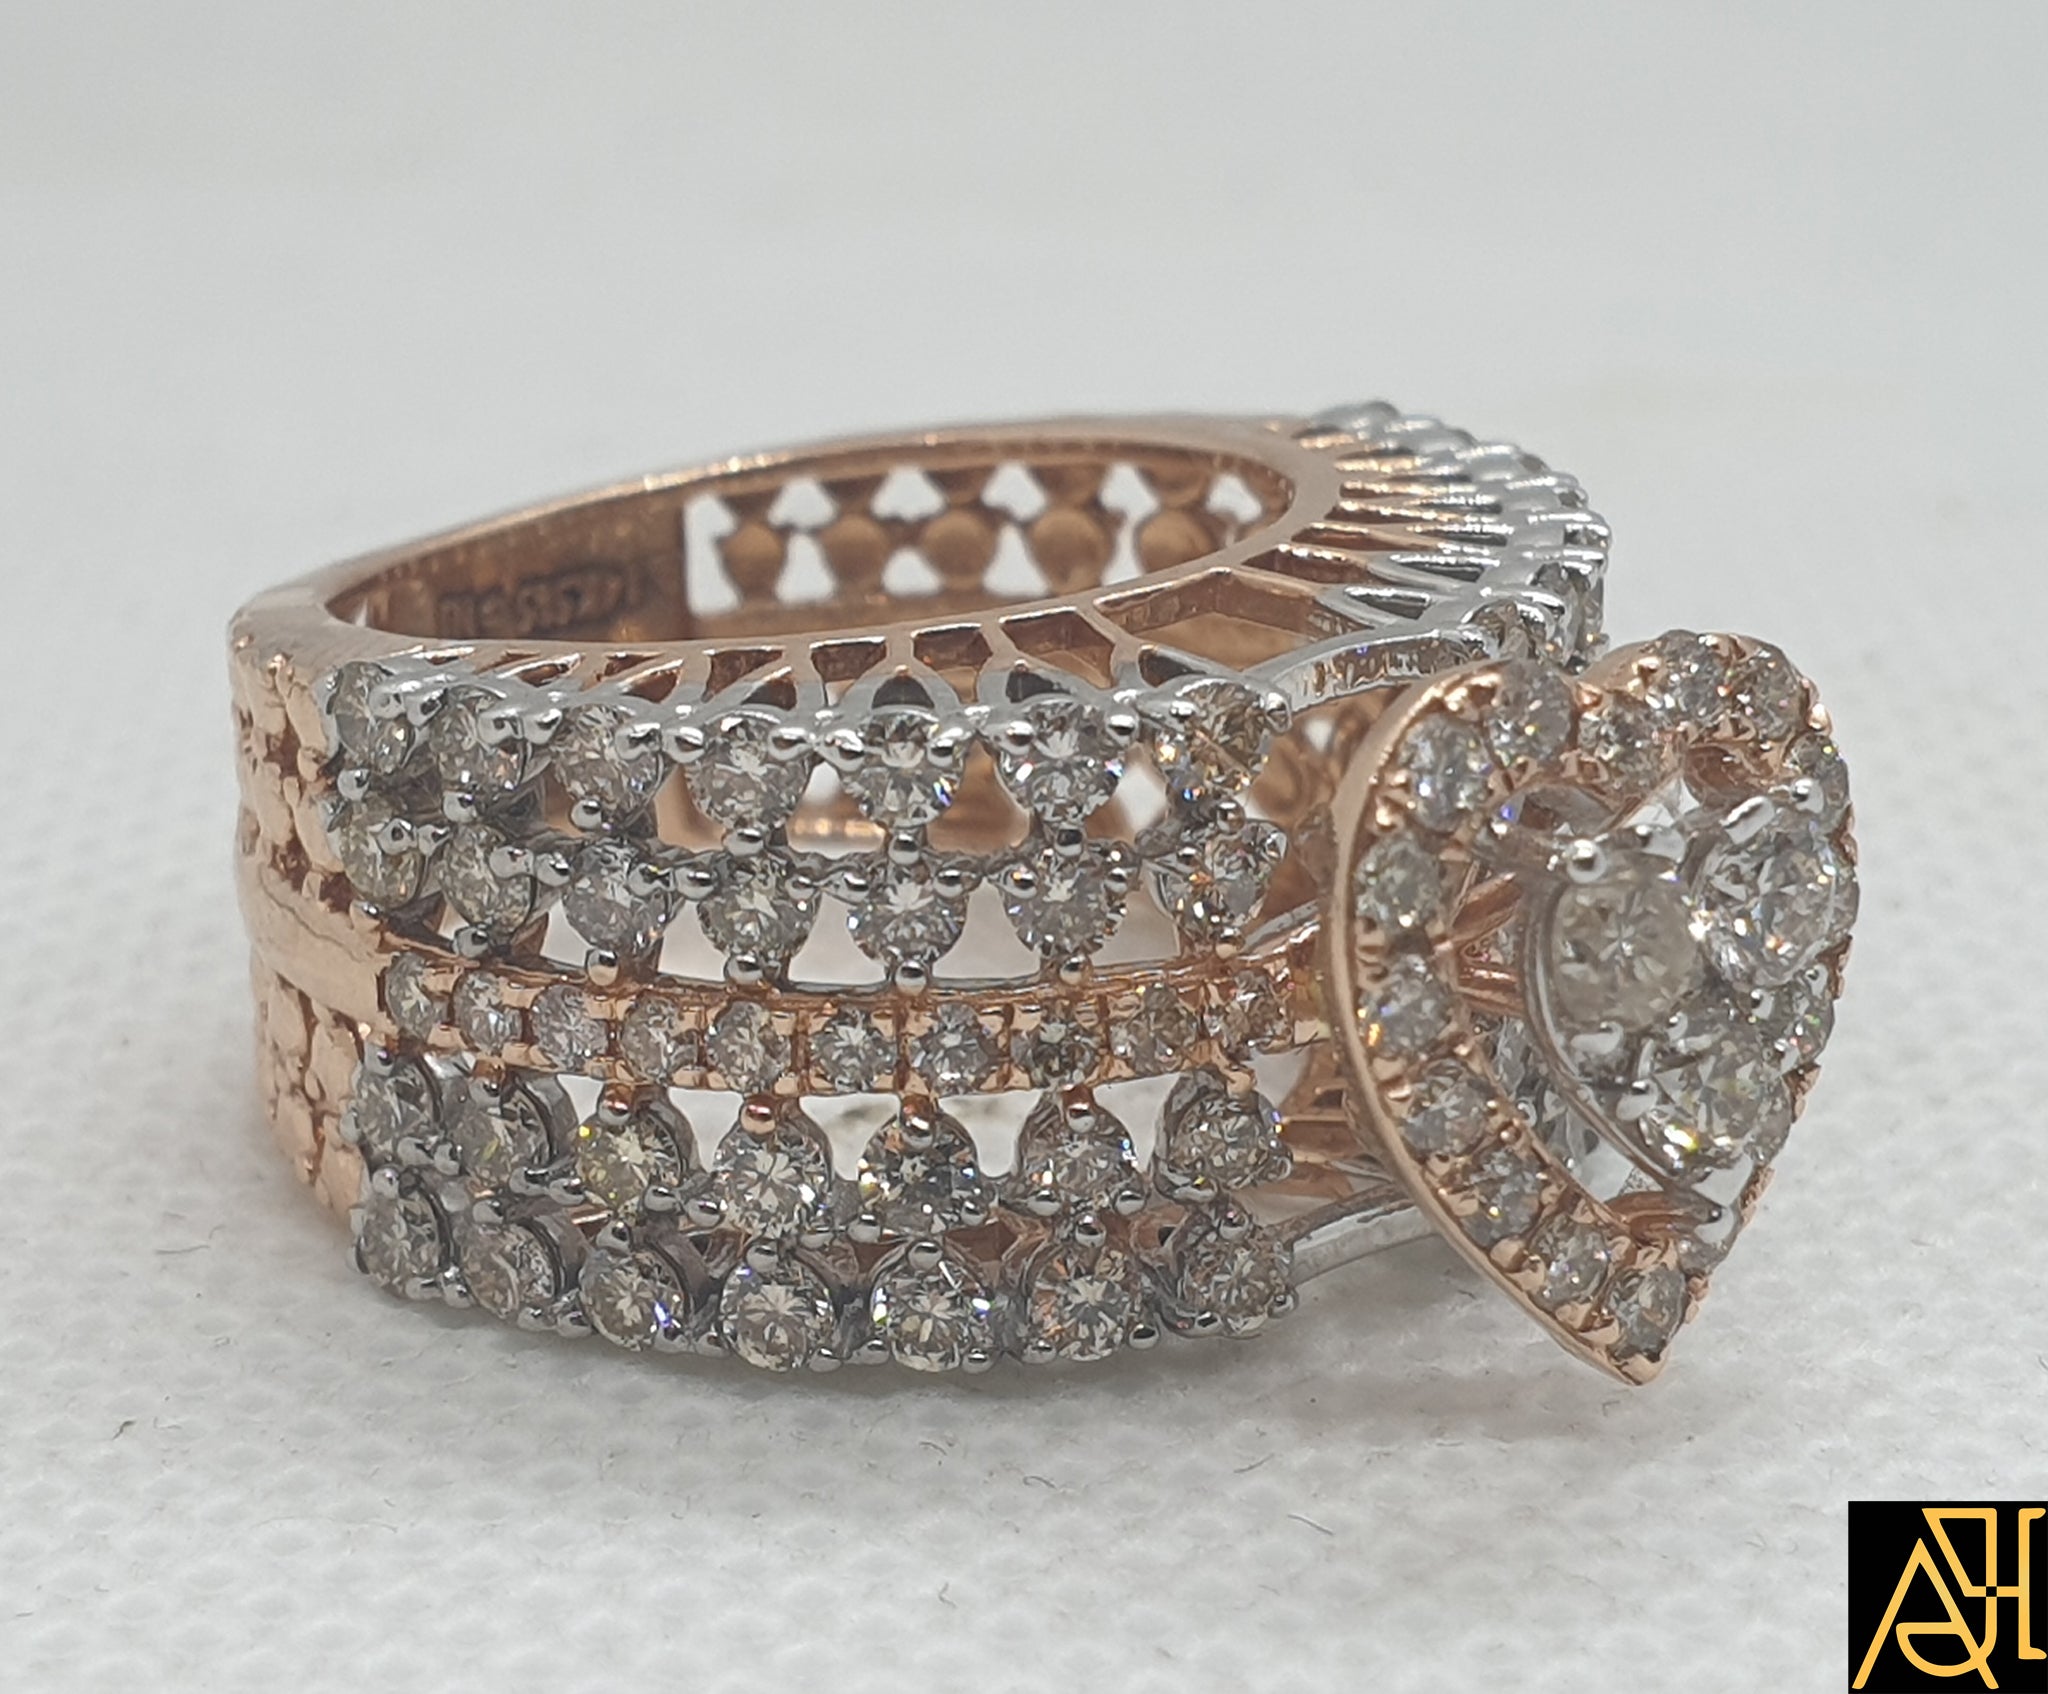 Halo Diamond Engagement Ring | Style 70635